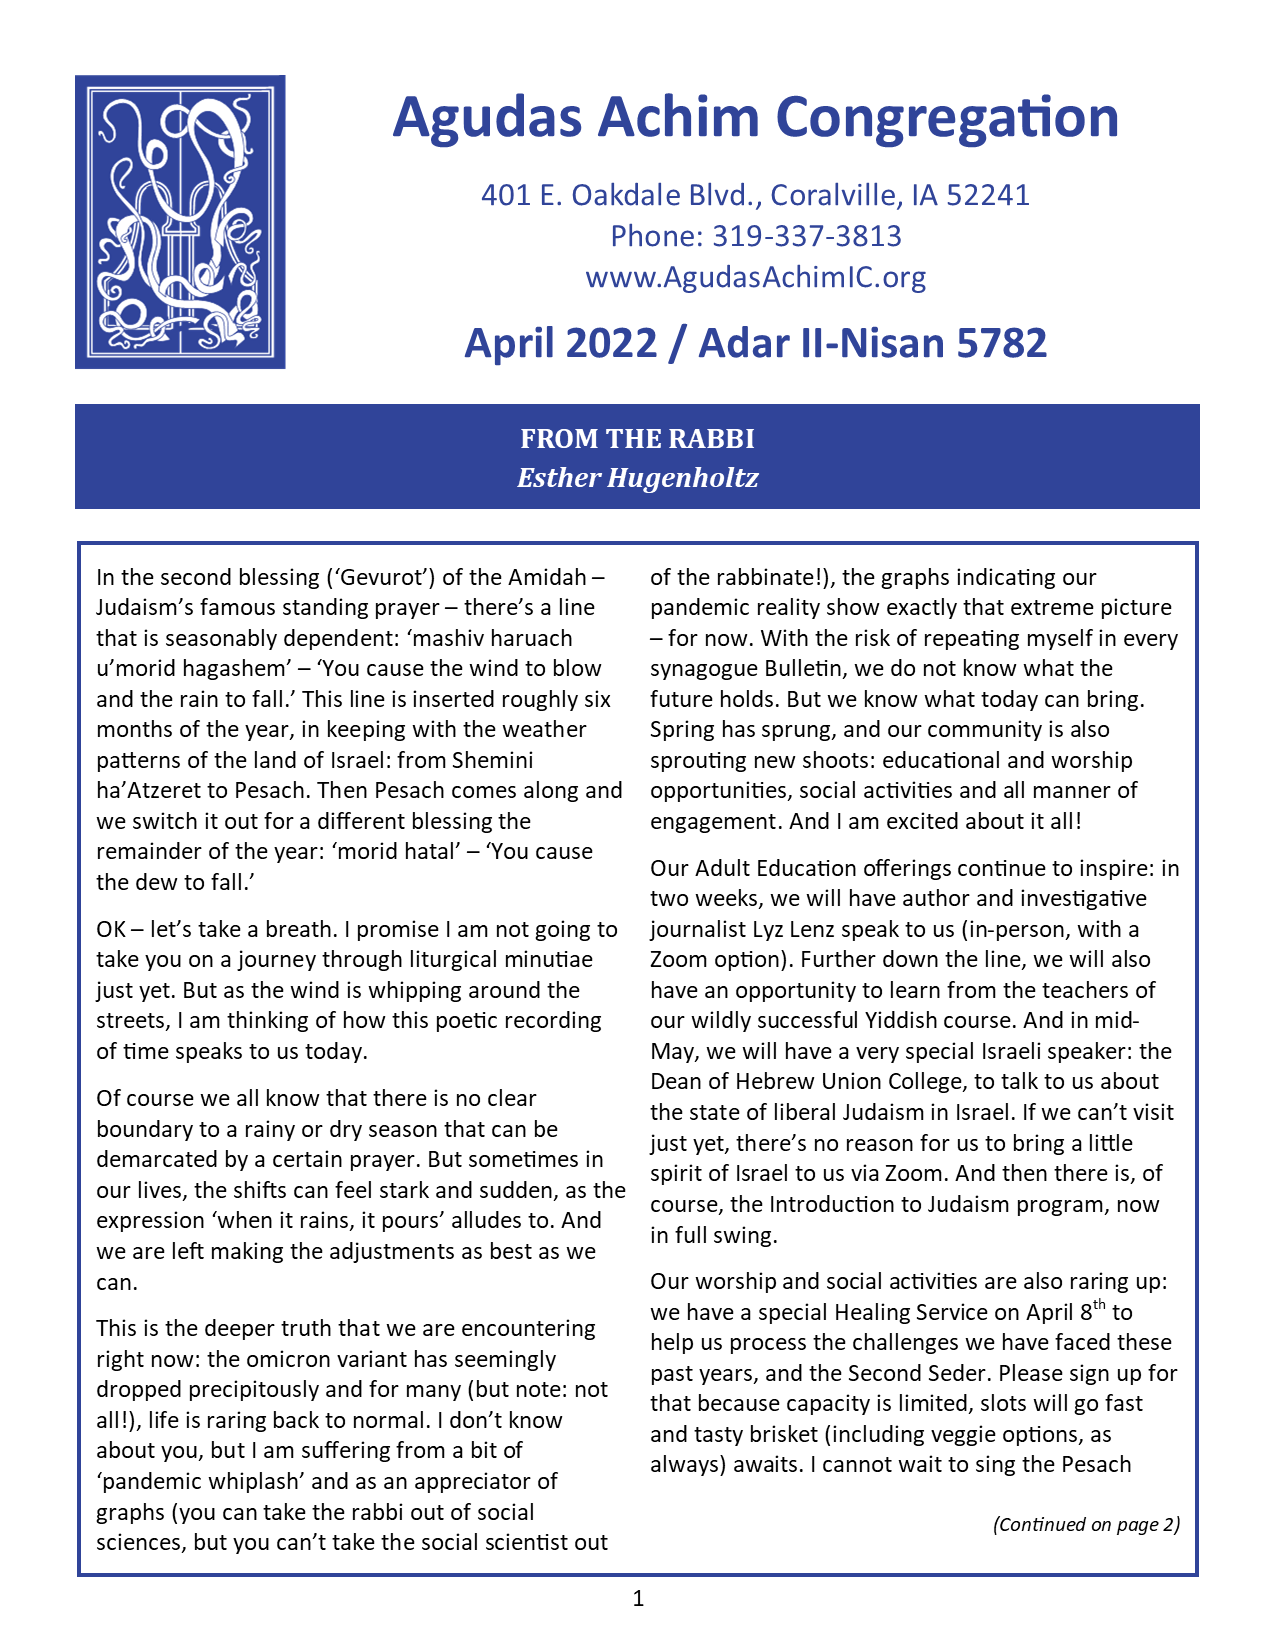 April 2022 Bulletin